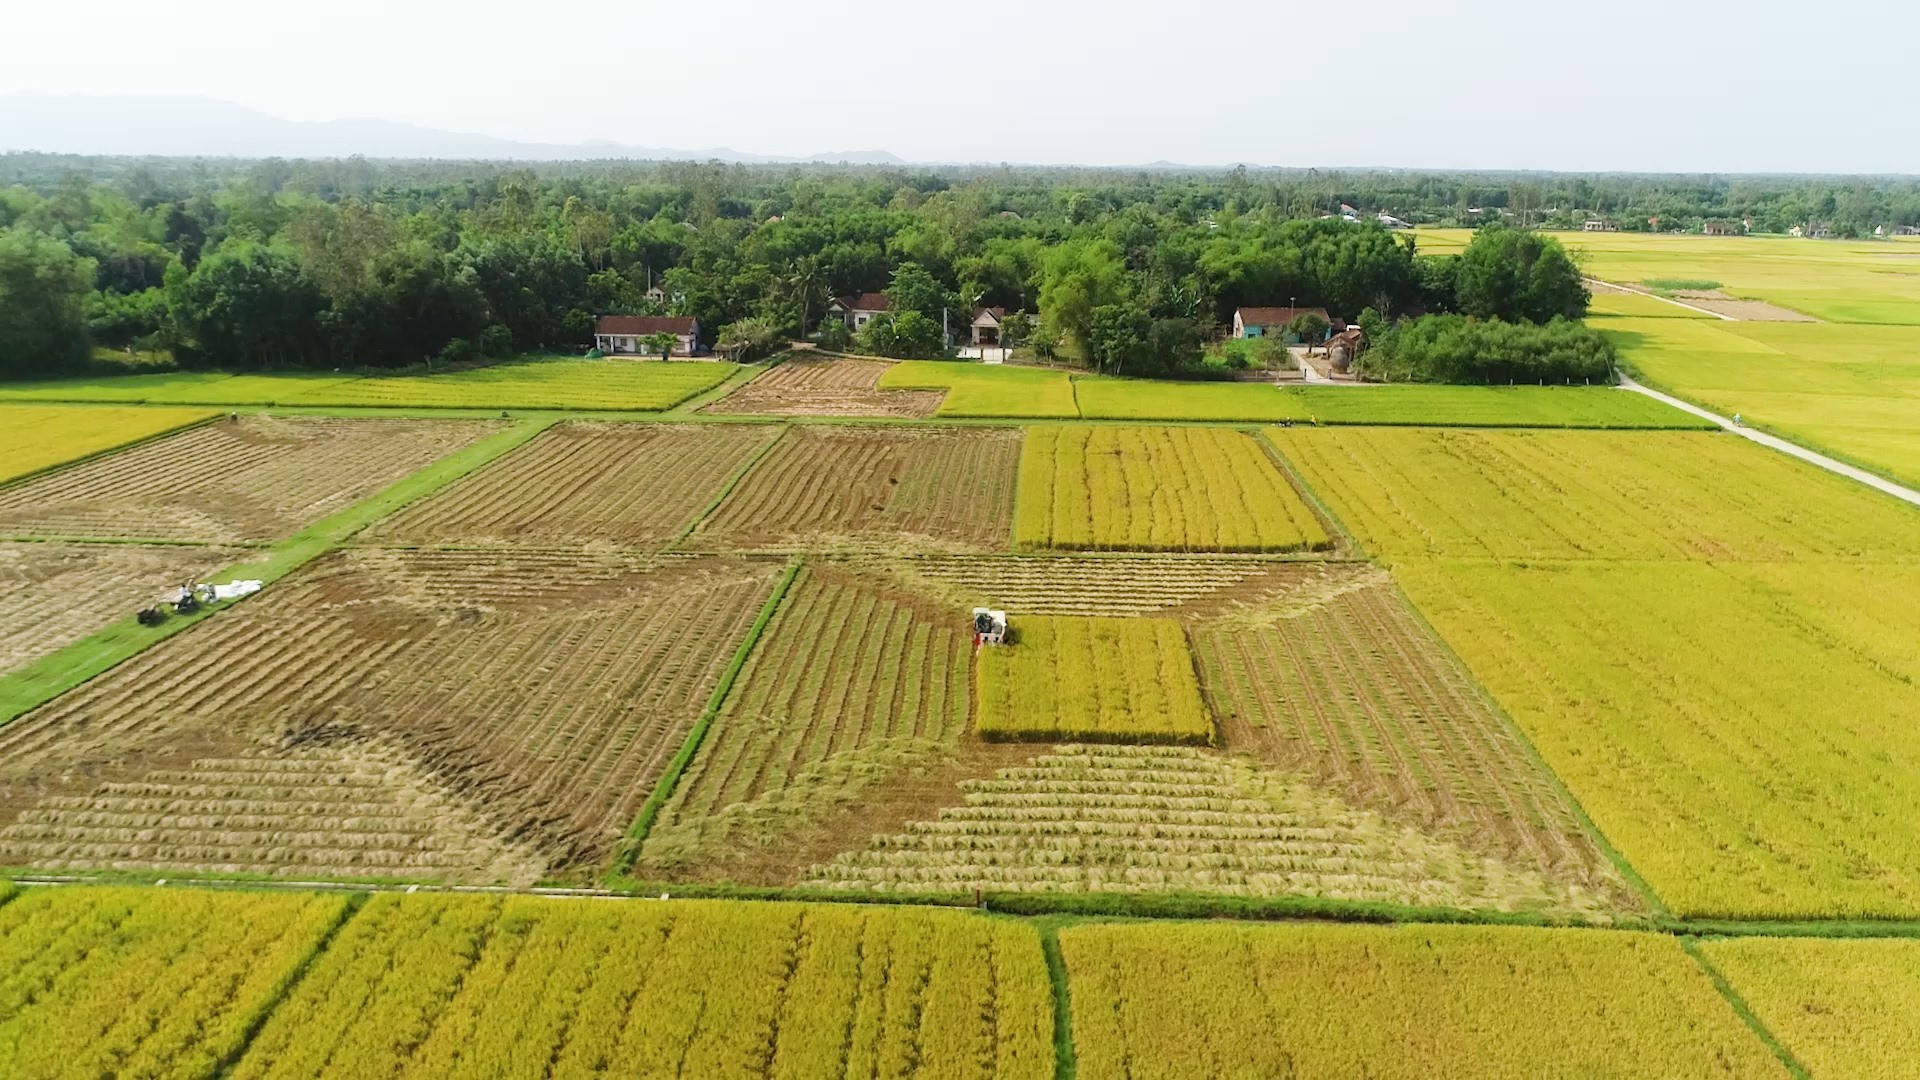 Tích tụ tập trung ruộng đất giúp các HTX thuận lợi liên kết với công ty để sản xuất lúa giống, đem lại hiệu quả kinh tế cao hơn. Ảnh: M.T